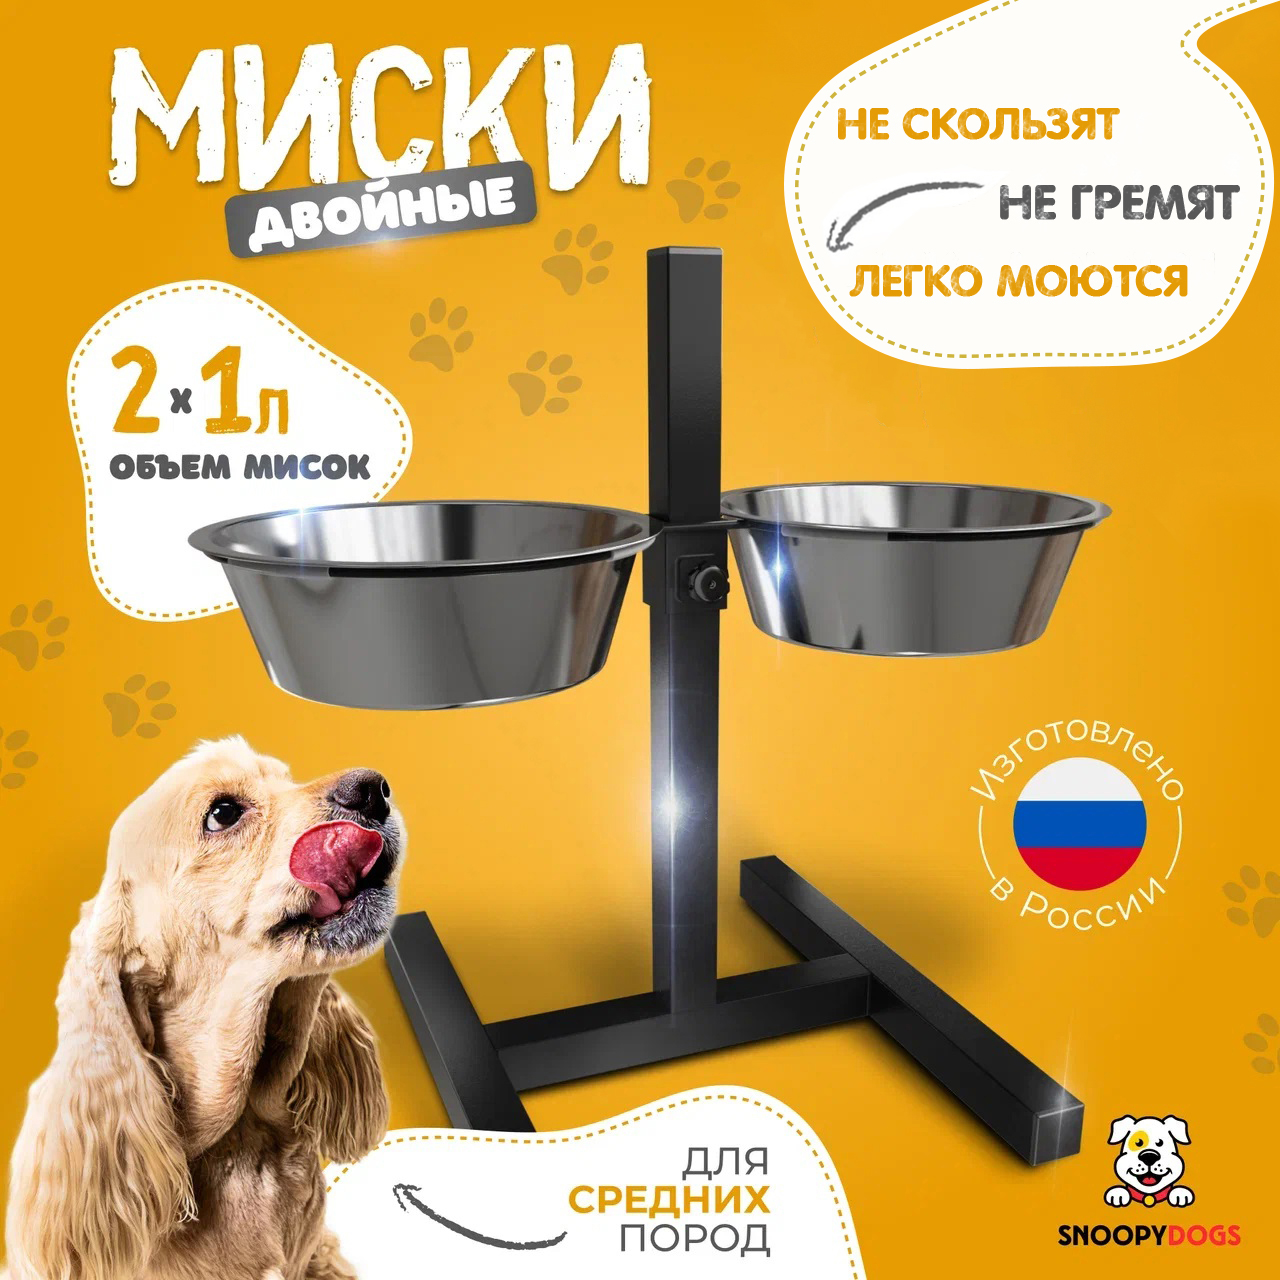 Миски для собак Snoopy Dogs на подставке, двойные, черные, нержавеющая сталь, 2 шт по 1 л